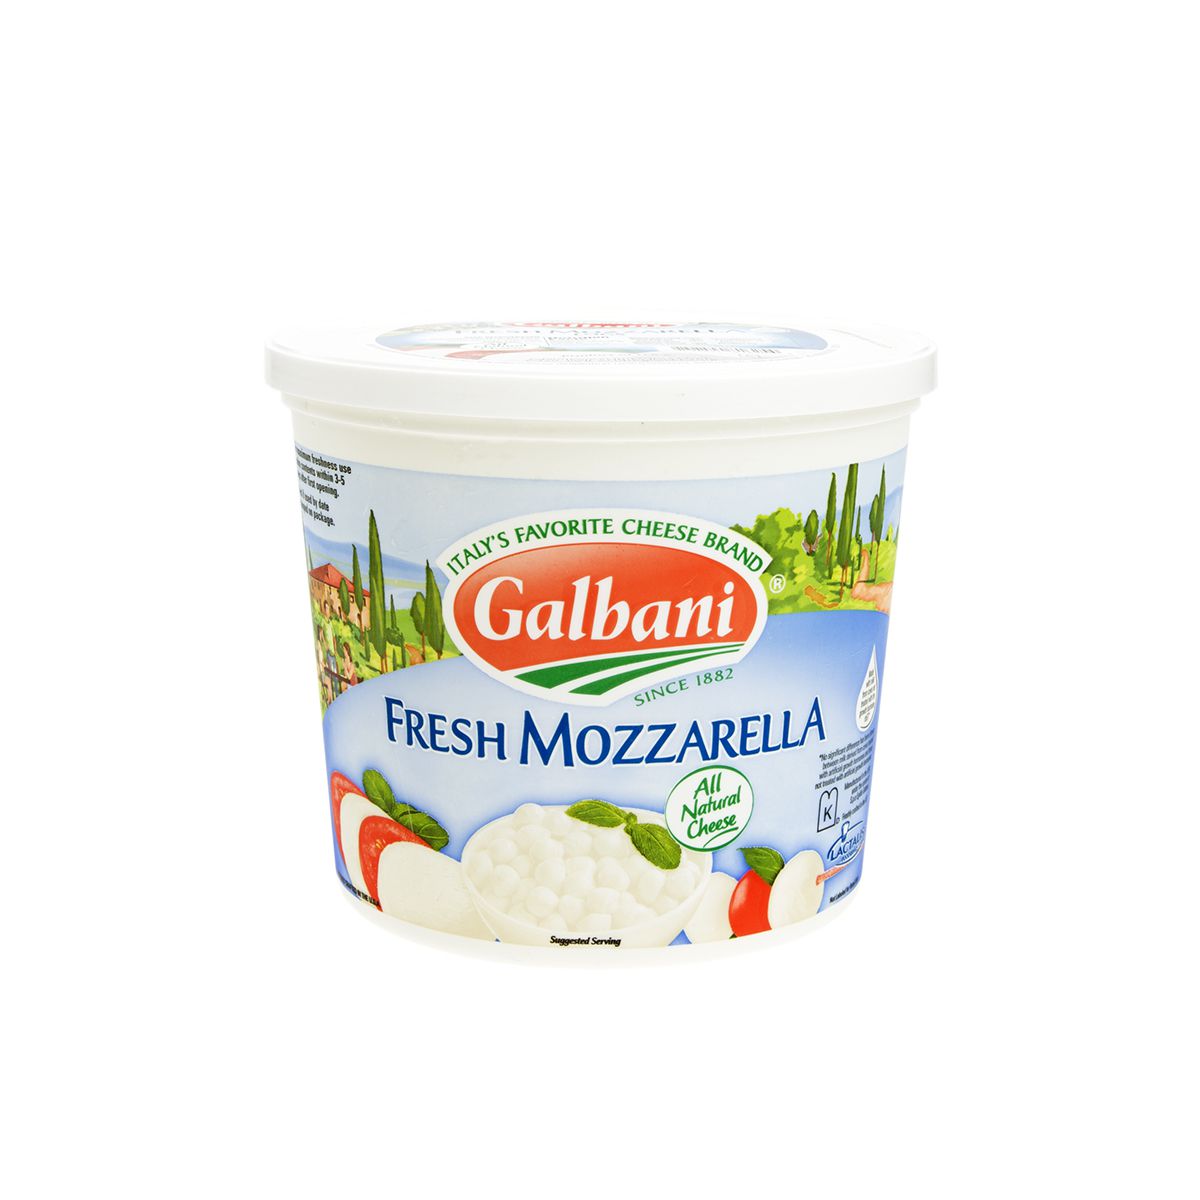 Galbani Mozzarella Cheese Logs in Water 1 LB